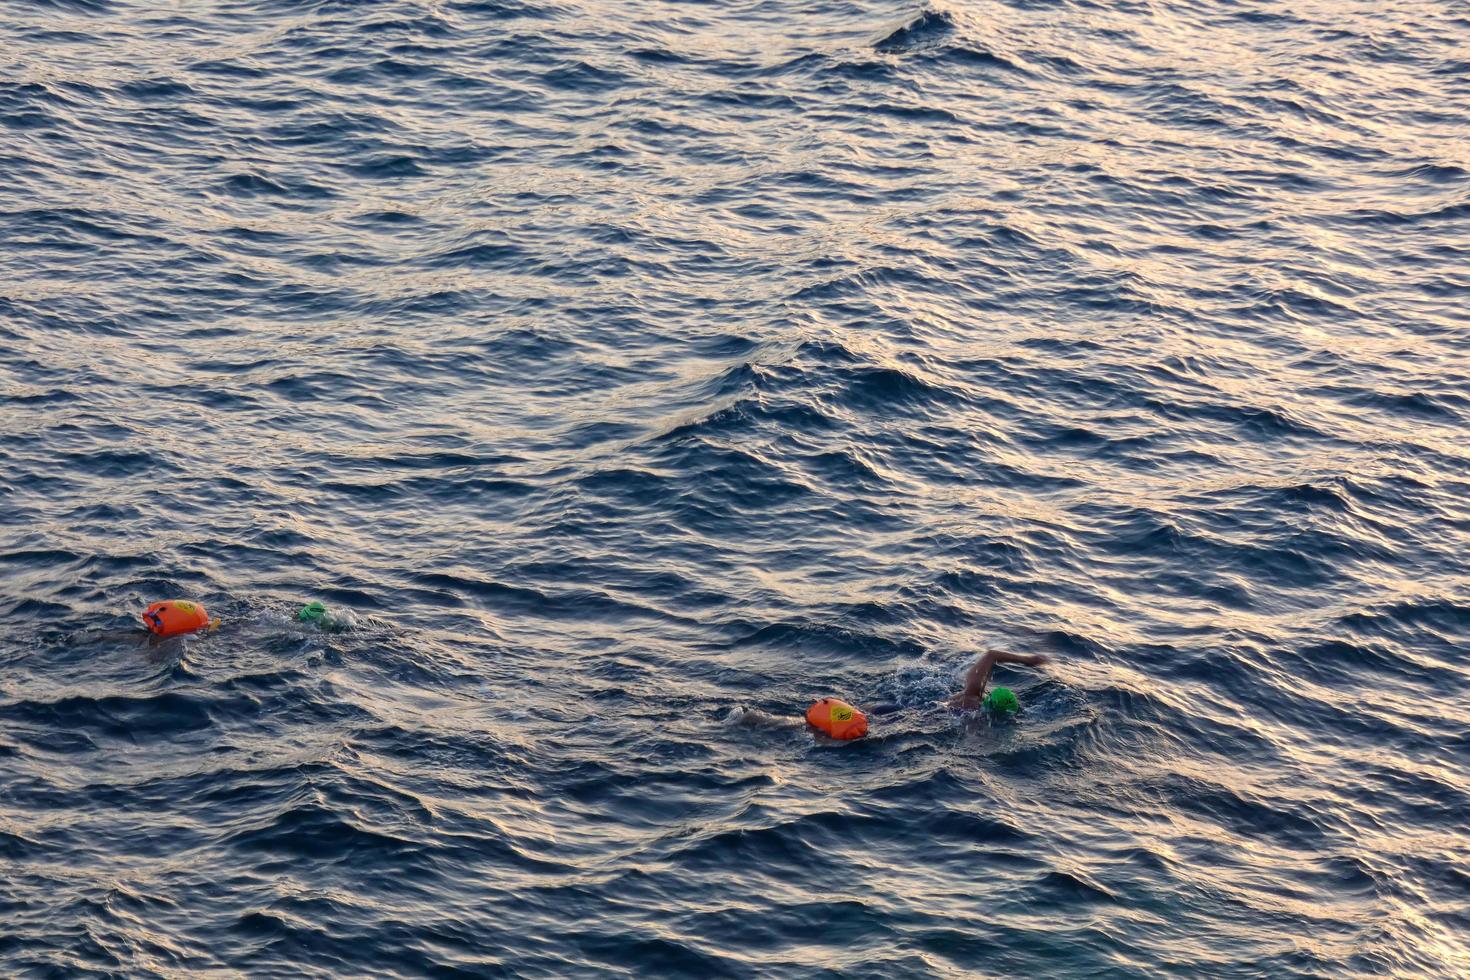 nadador nadando em águas abertas no mar mediterrâneo com uma bóia de segurança foto